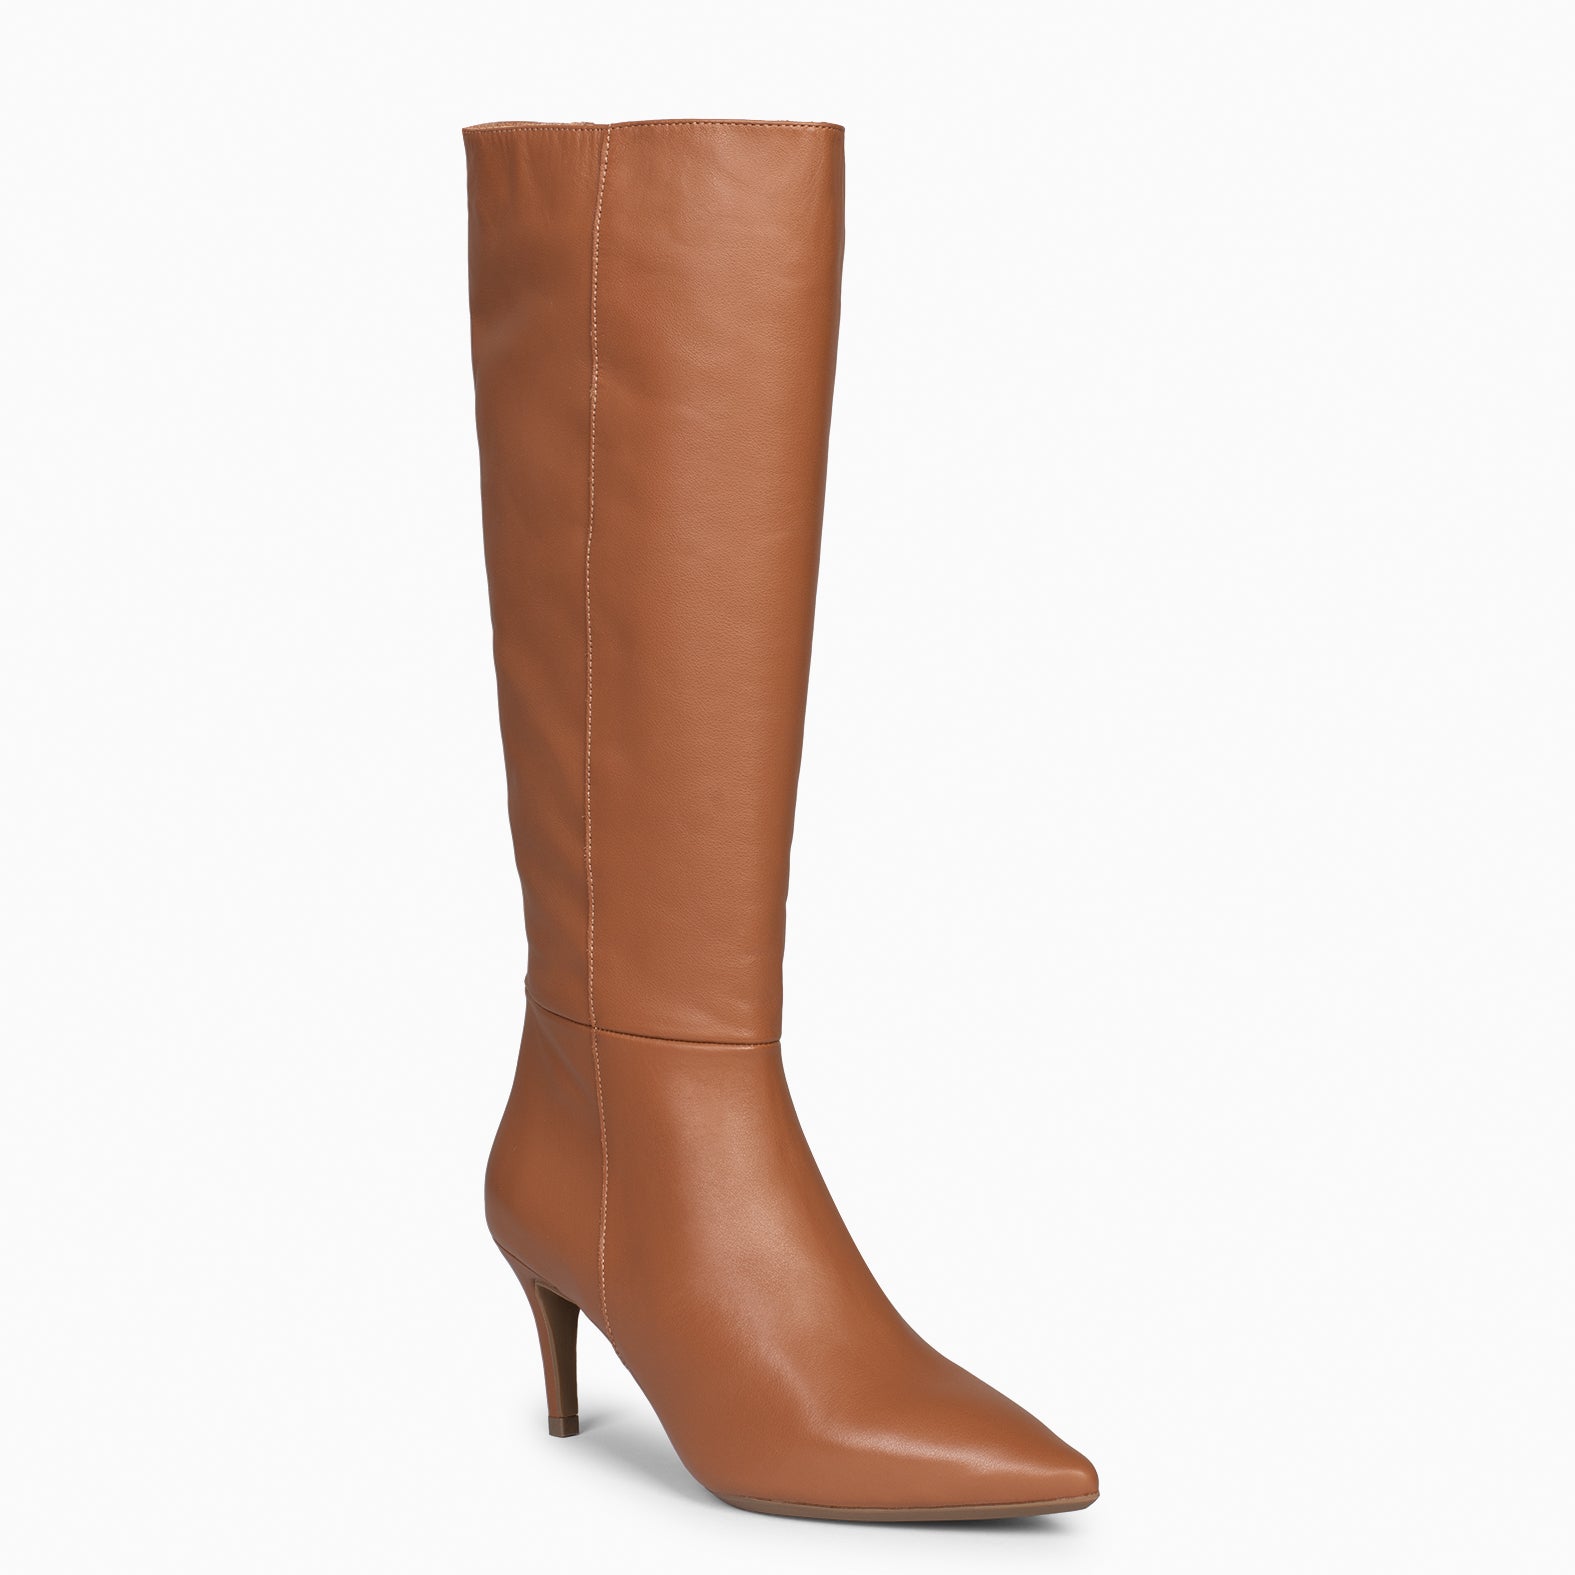 MANHATTAN – CAMEL Thin heel boots with zipper 